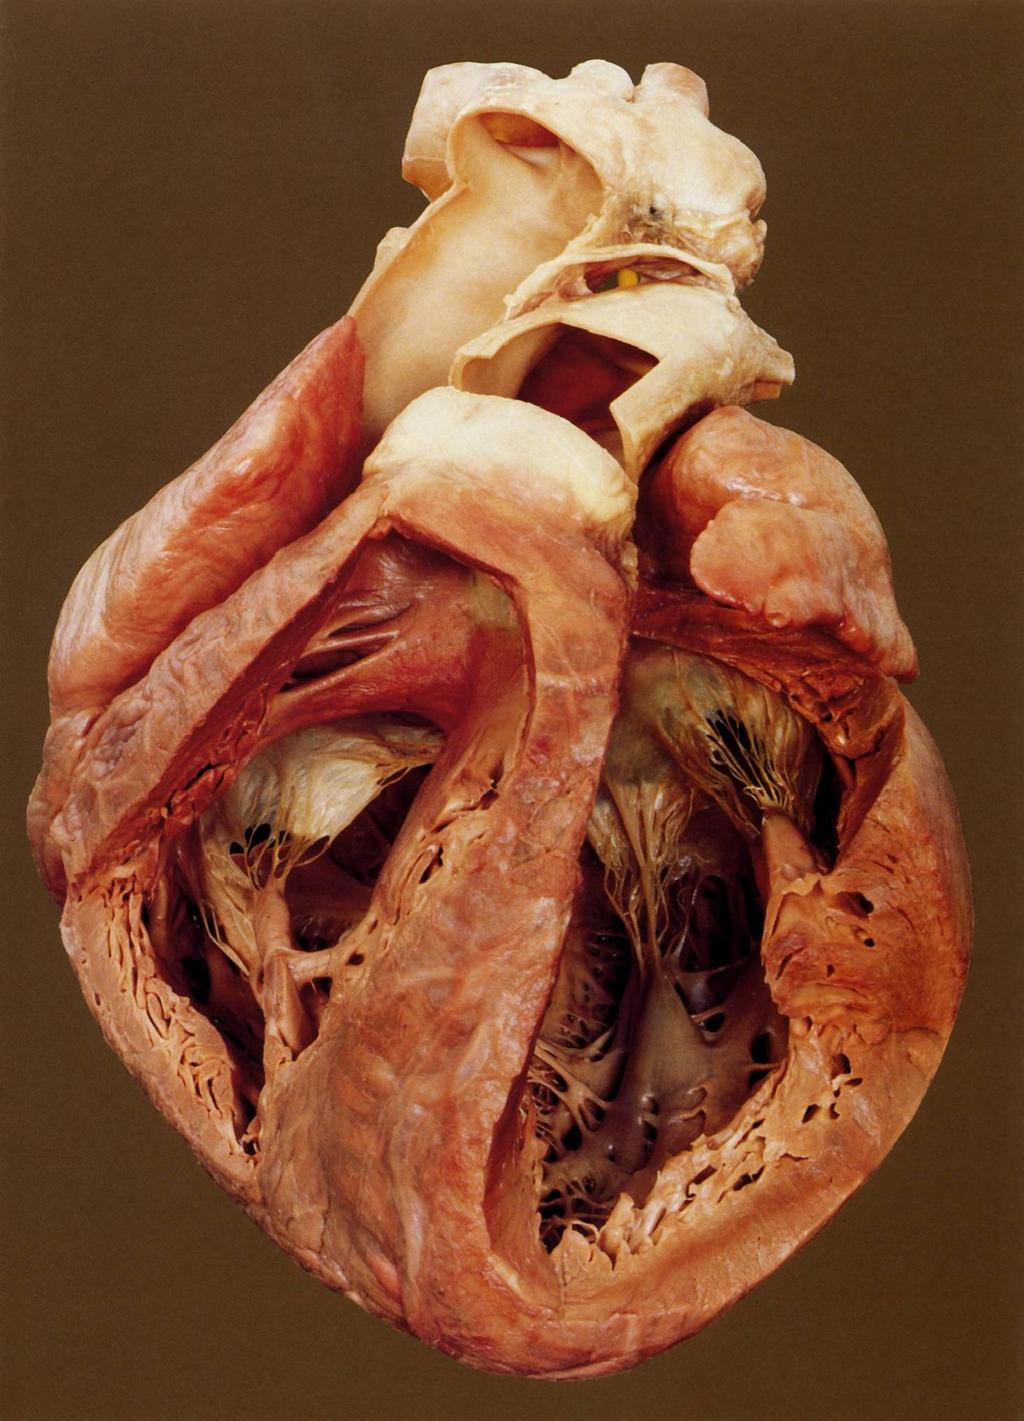 A szív v kamrái: ventriculus dexter, ventriculus sinister A A kék k k nyíl l a truncus pulmonalisban,, a piros nyíl l az aorta szájad jadéka felé mutatja a véráramlás s irány nyát.